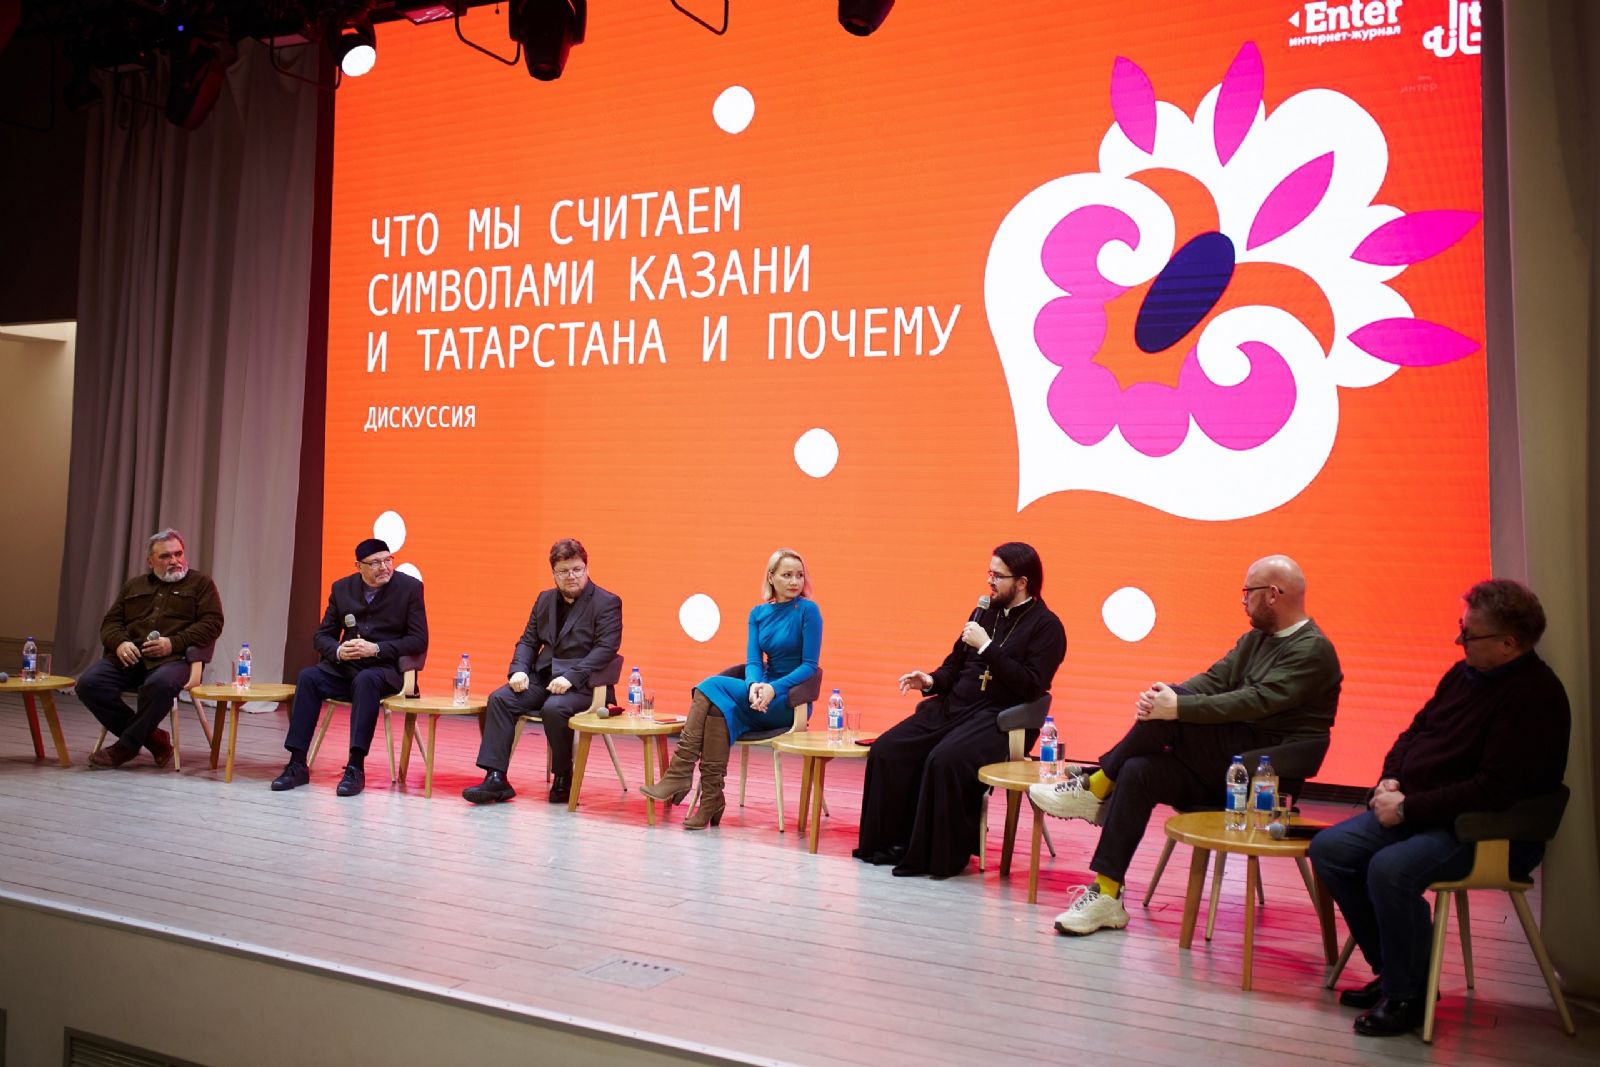 Священник Казанской епархии принял участие в дискуссии, посвящённой символам Казани и Татарстана